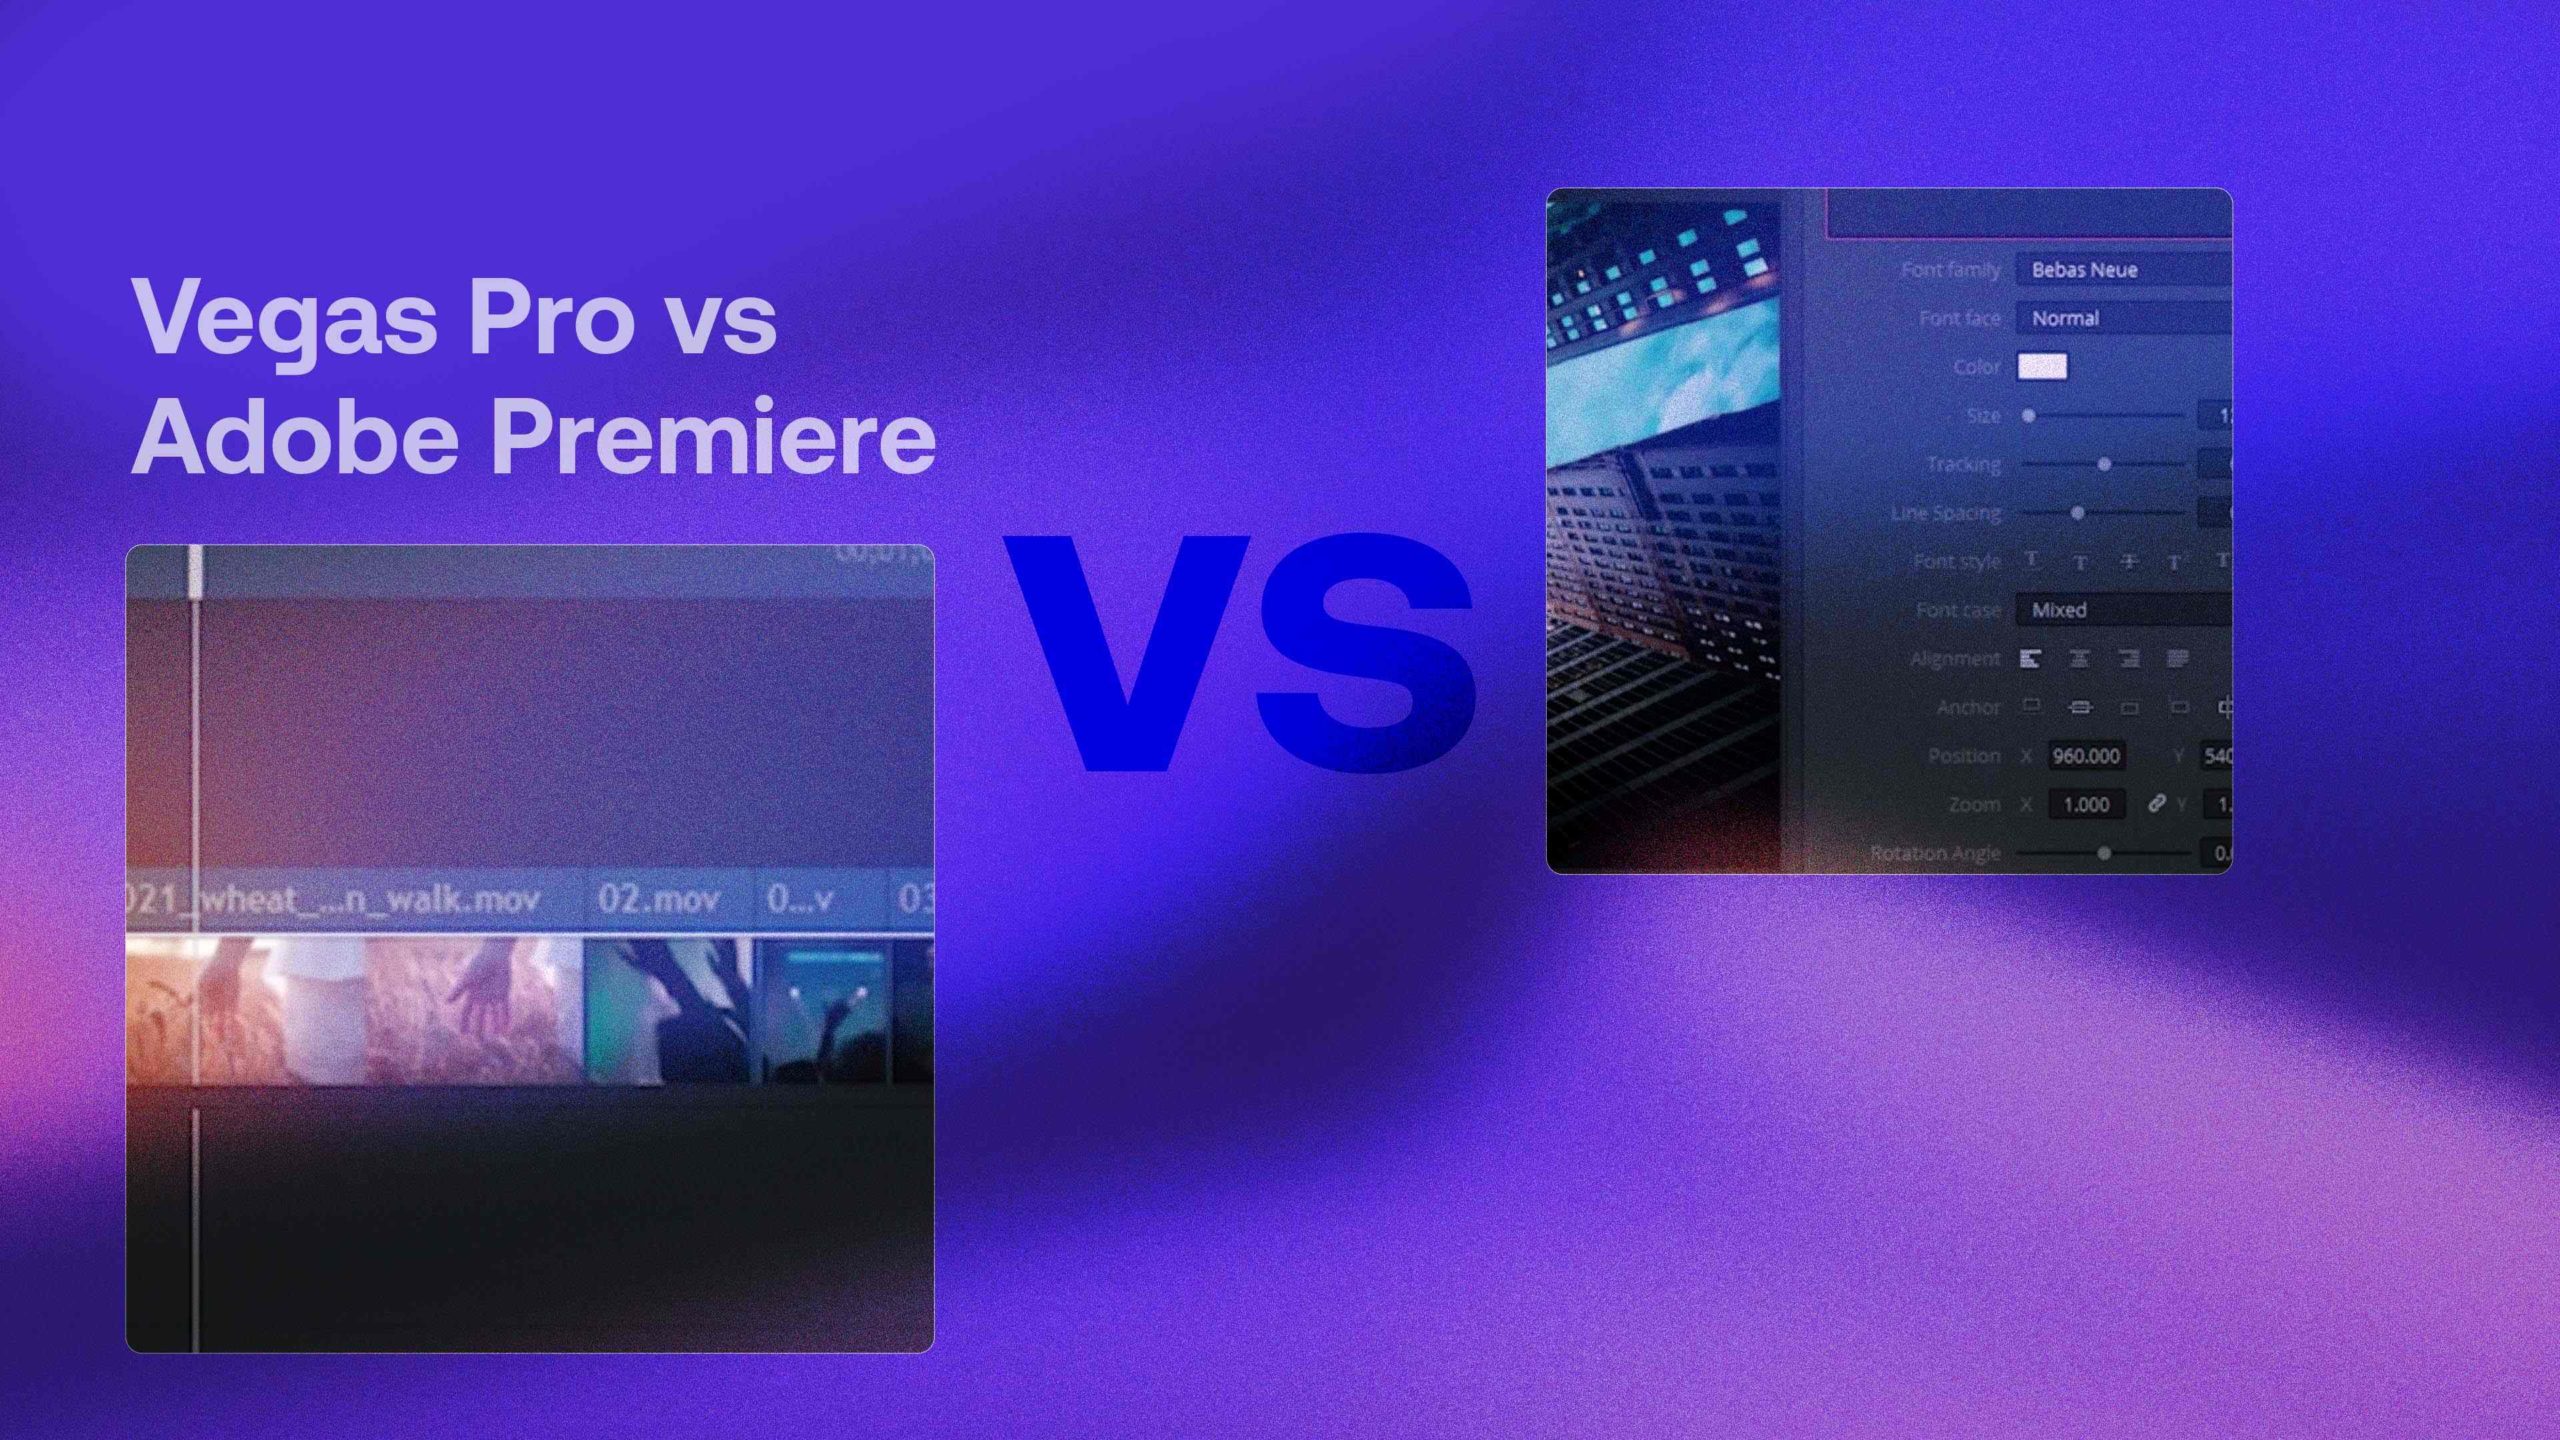 progenie martillo Glorioso Vegas Pro 365 vs Adobe Premiere: Which is the Better Video Editor? - Motion  Array